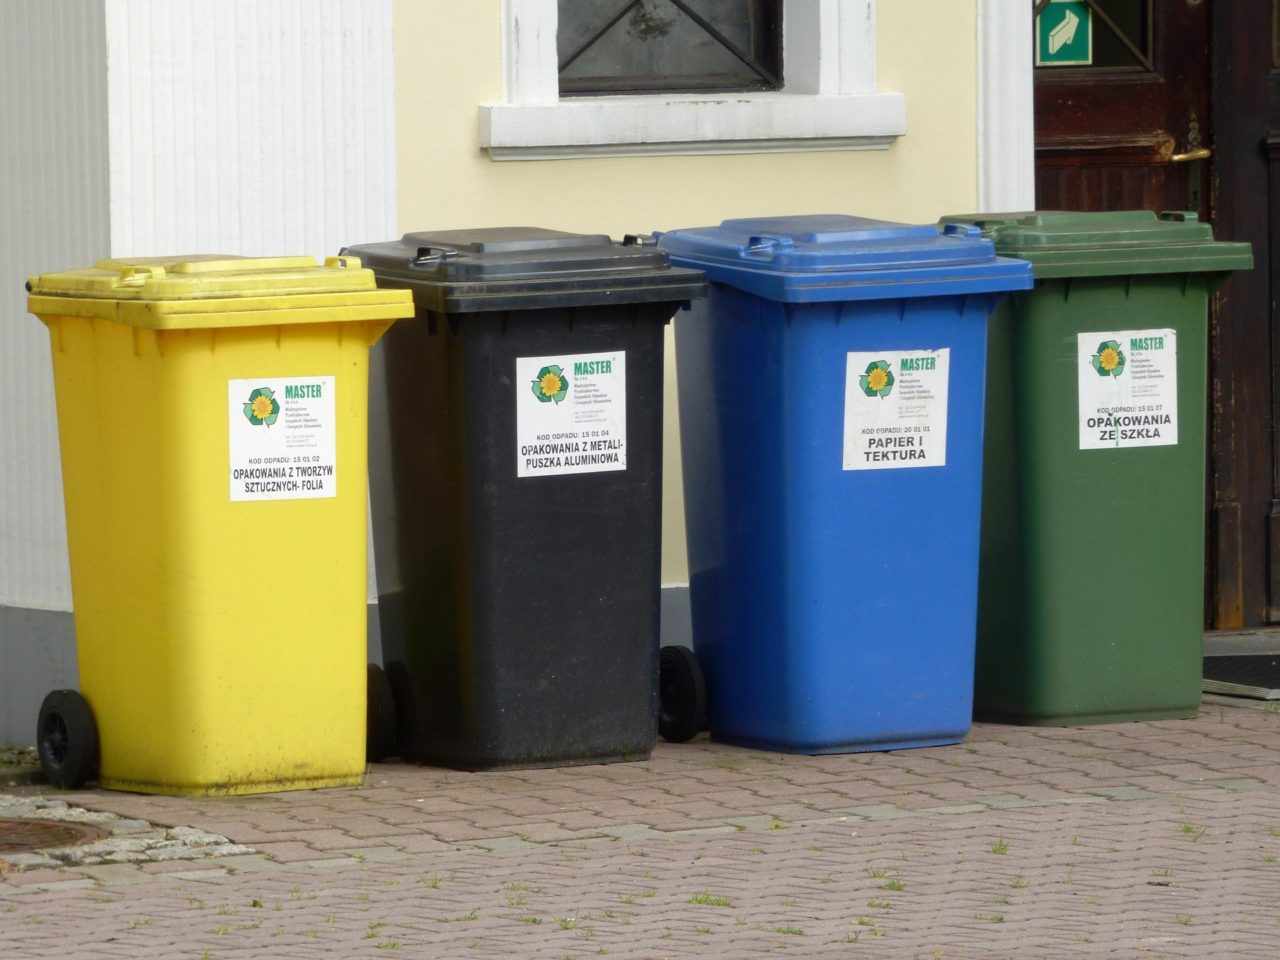 Harmonogram odbioru odpadów komunalnych z nieruchomości zamieszkałych na terenie Gminy Miasto Nowy Targ w roku 2020